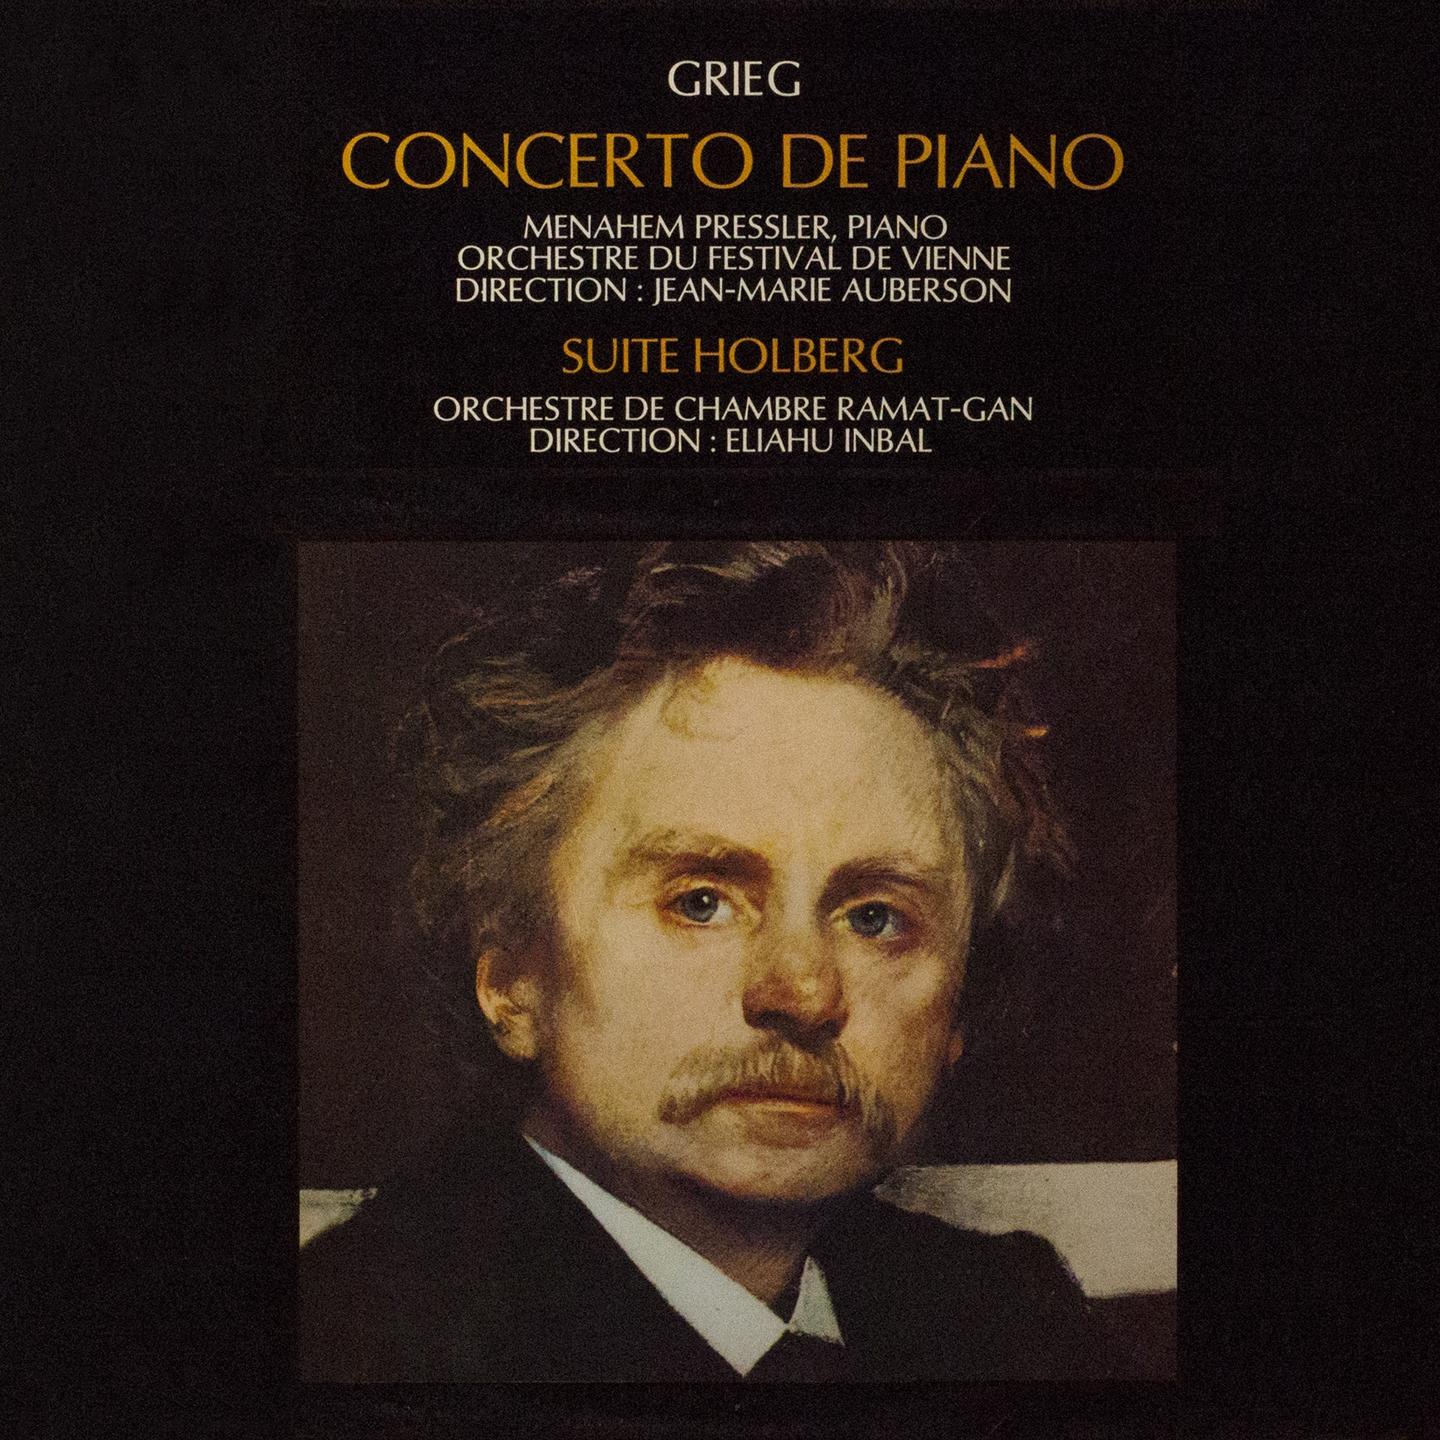 Concerto pour piano in A Minor, Op. 16: I. Allegro molto moderato